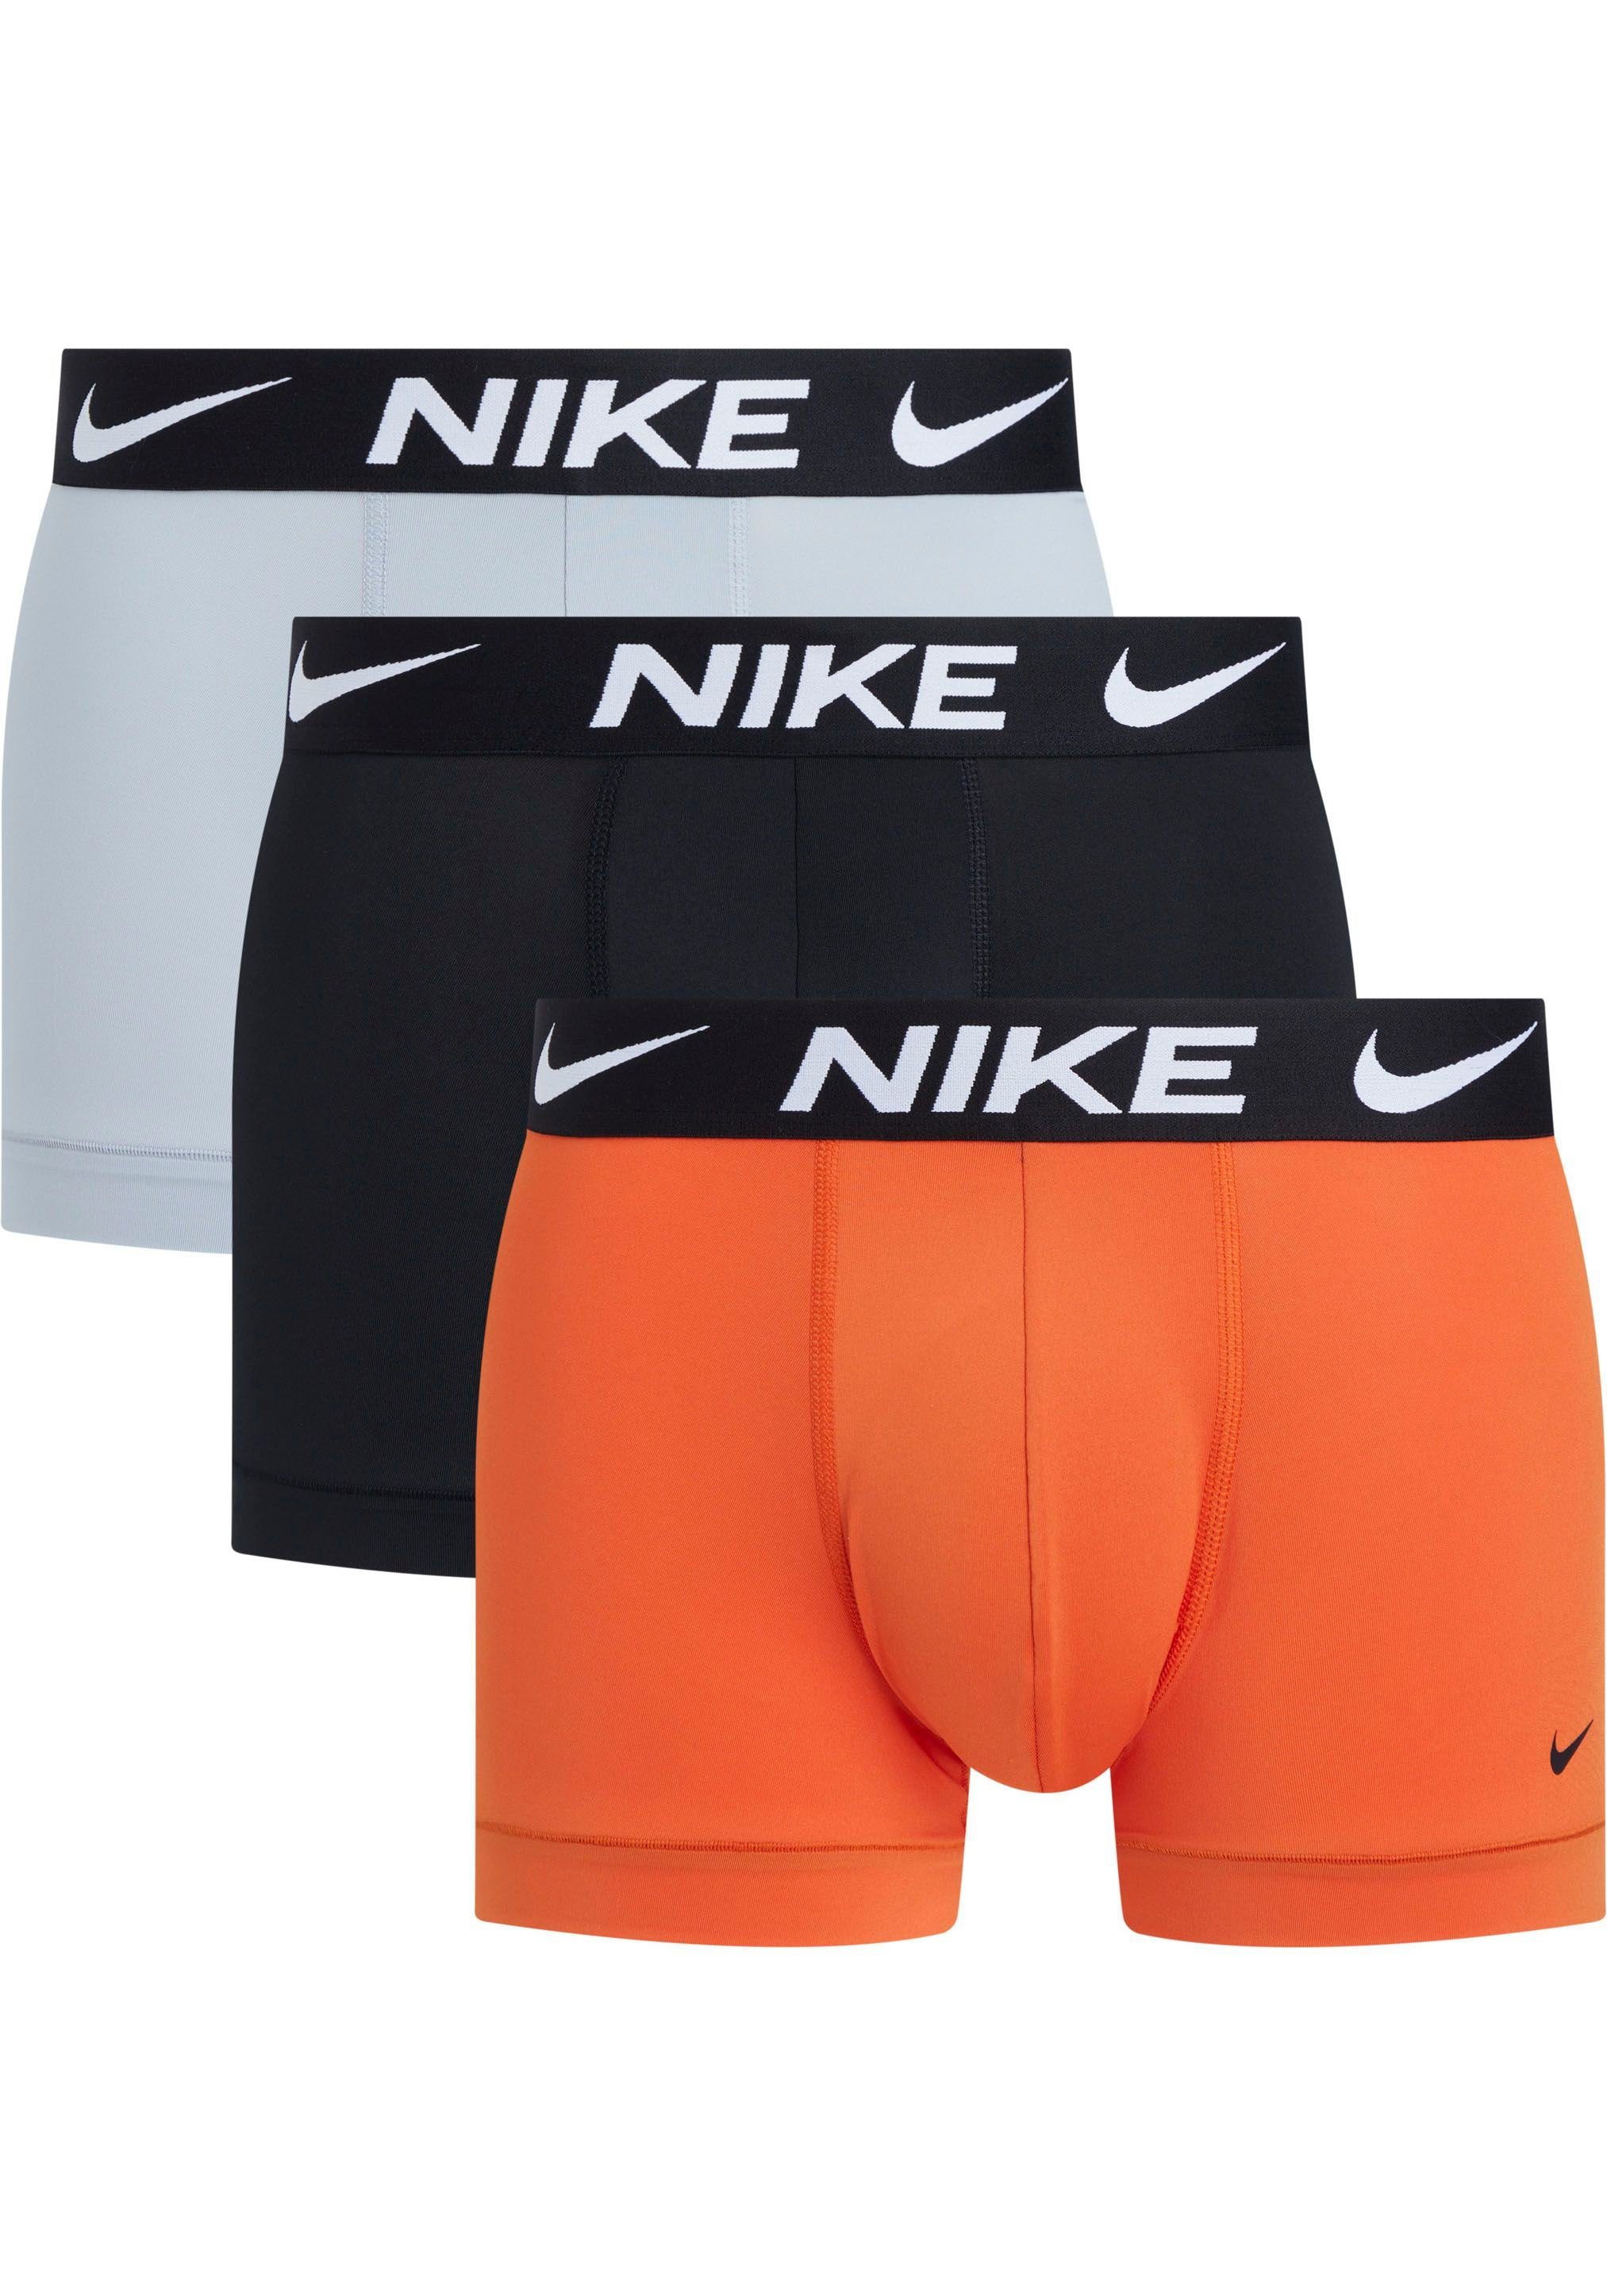 NIKE Underwear Trunk TRUNK 3PK (Packung, 3er-Pack) mit NIKE Logo-Elastikbund (3 Stück) TEAM_ORANGE/WOLF_GREY/_BLACK